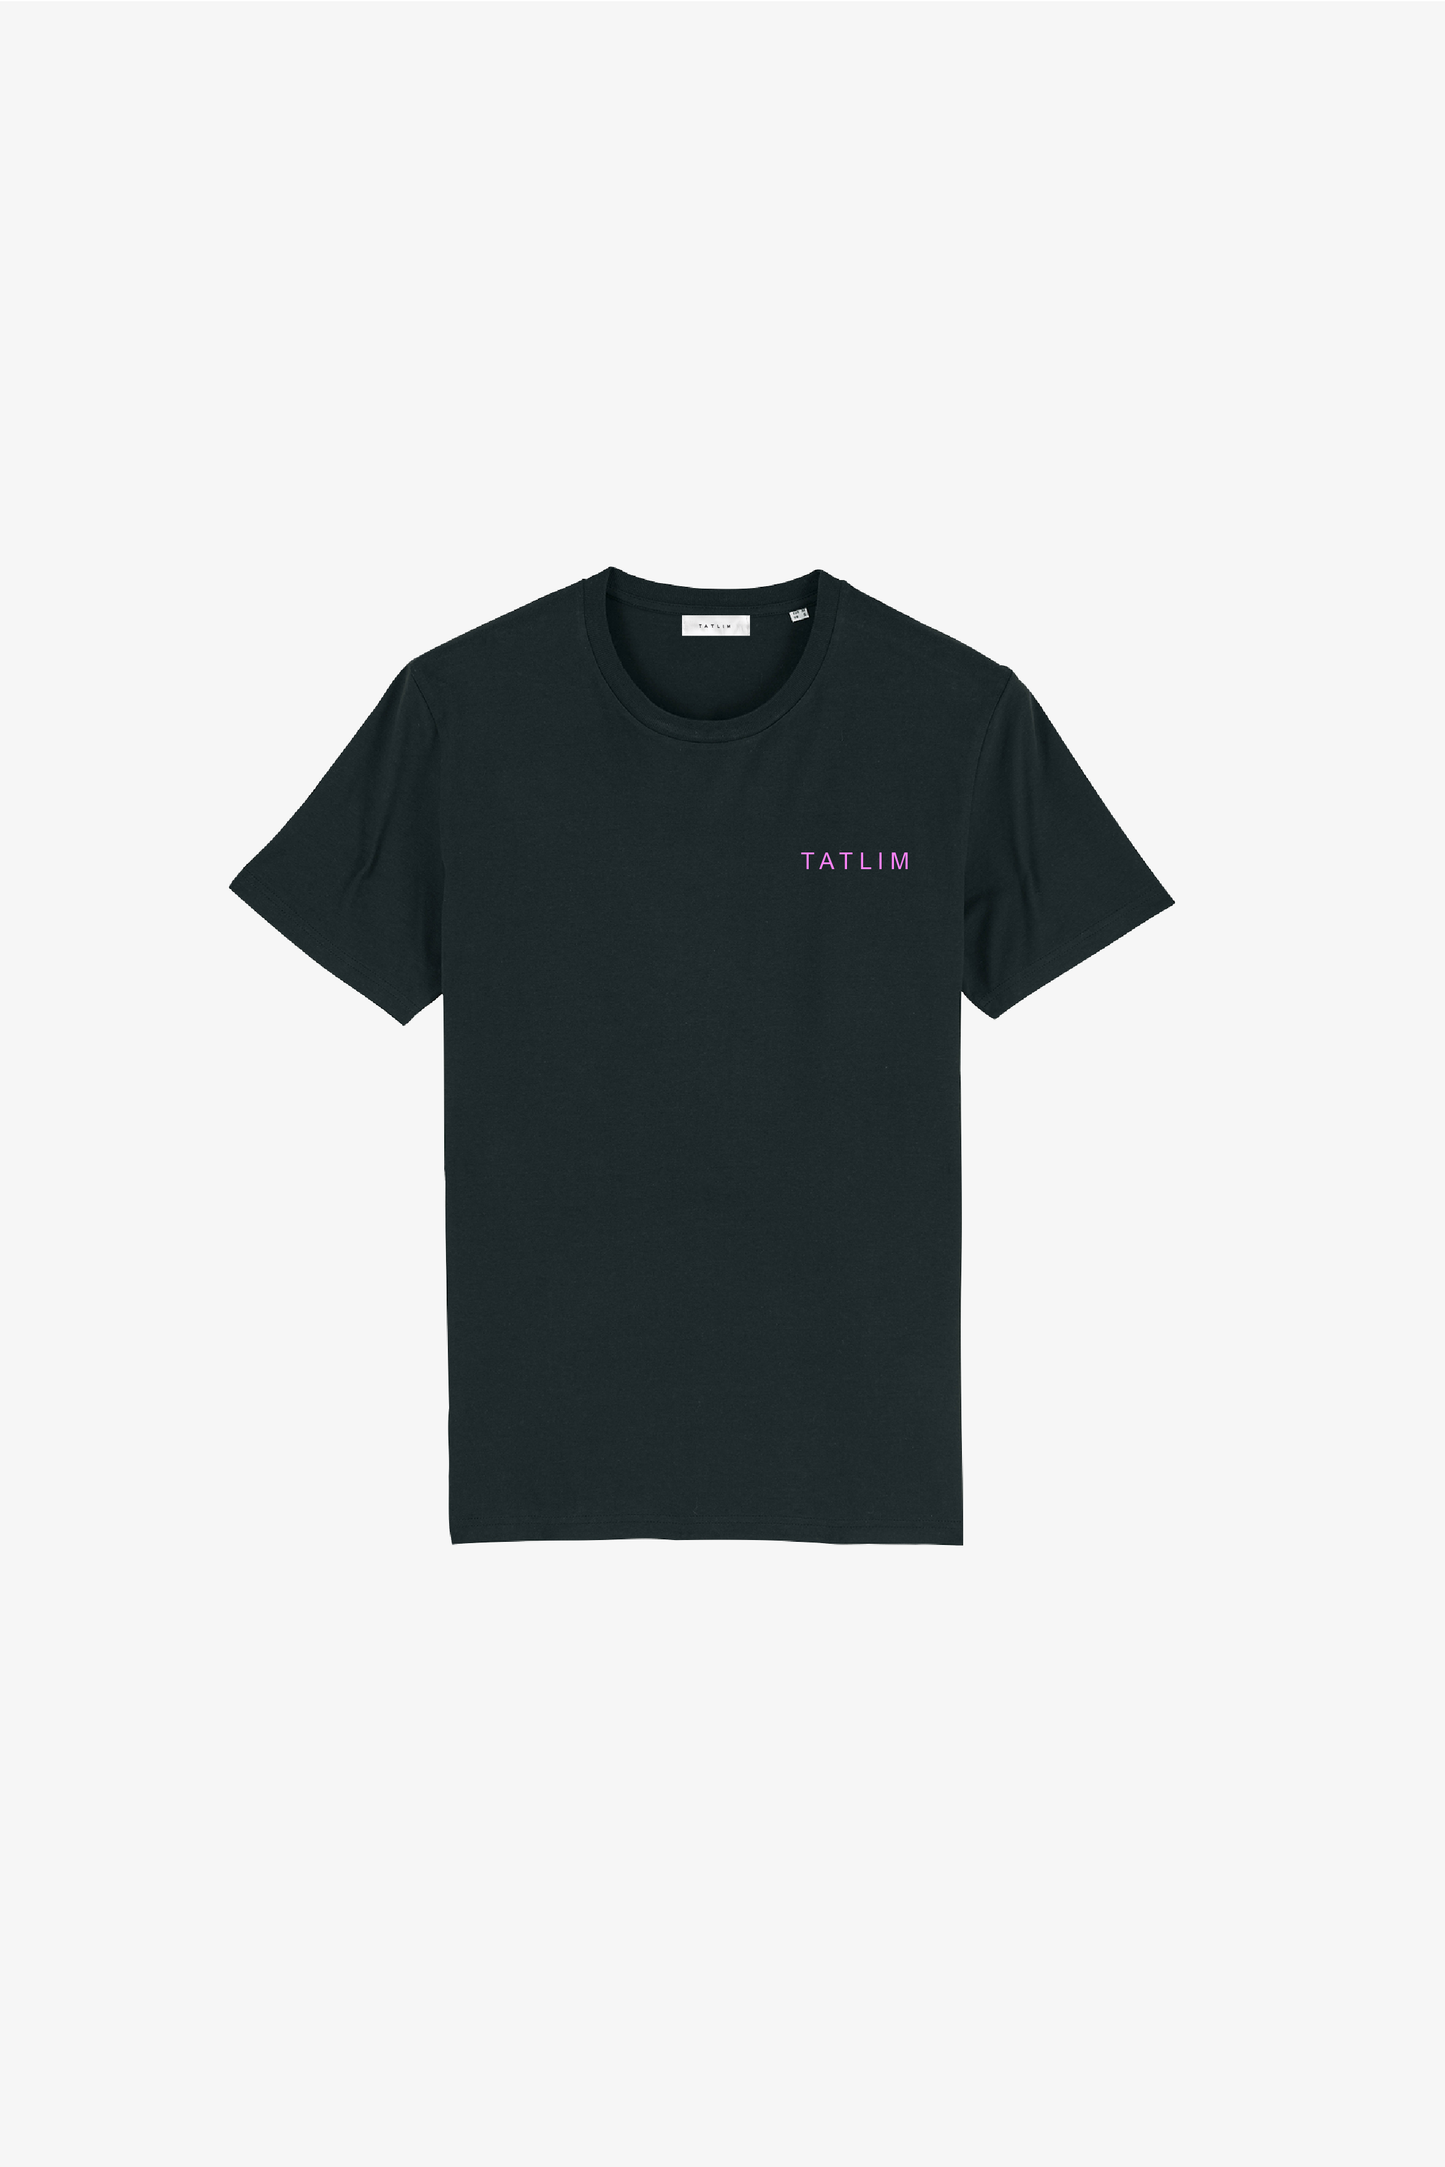 Black Tatlim Essentials II T Shirt